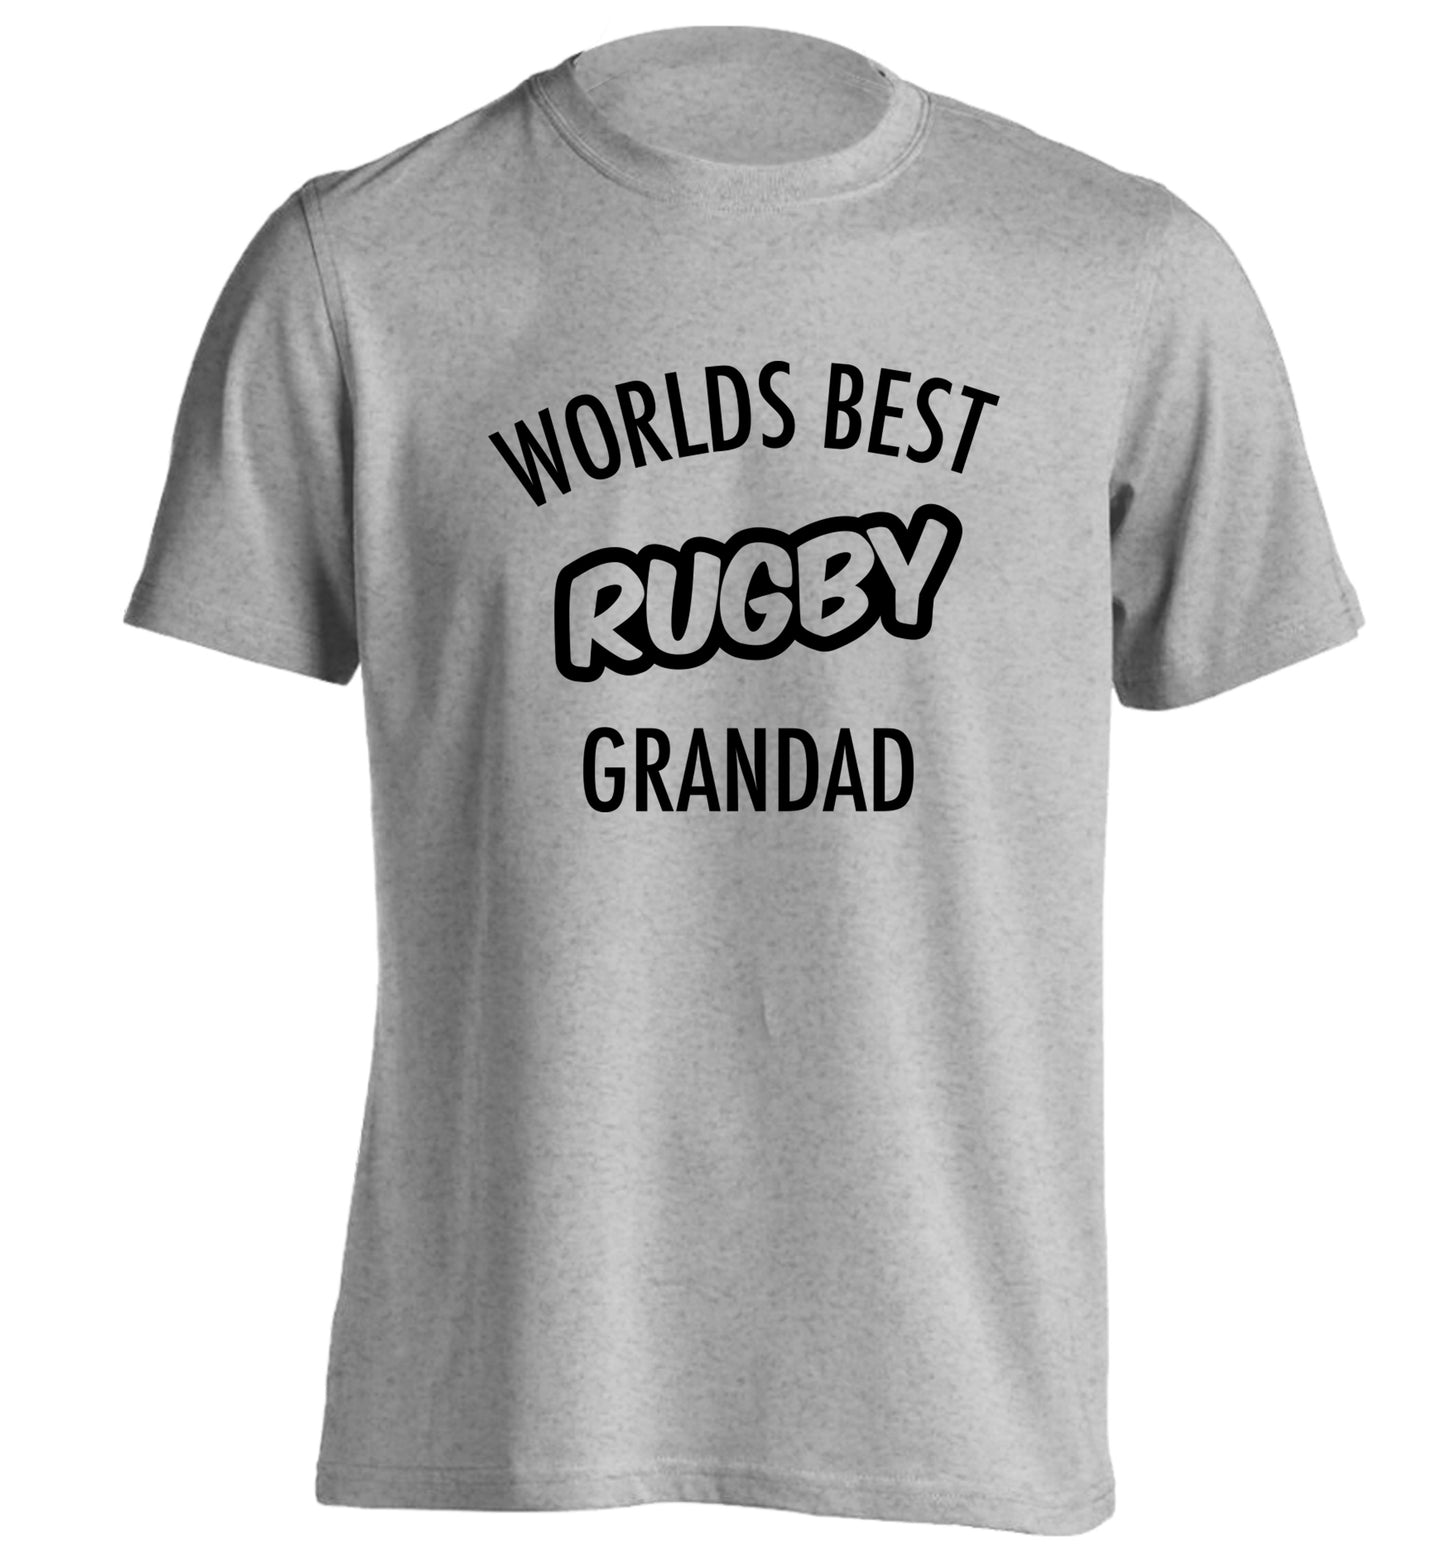 Worlds best rugby grandad adults unisex grey Tshirt 2XL